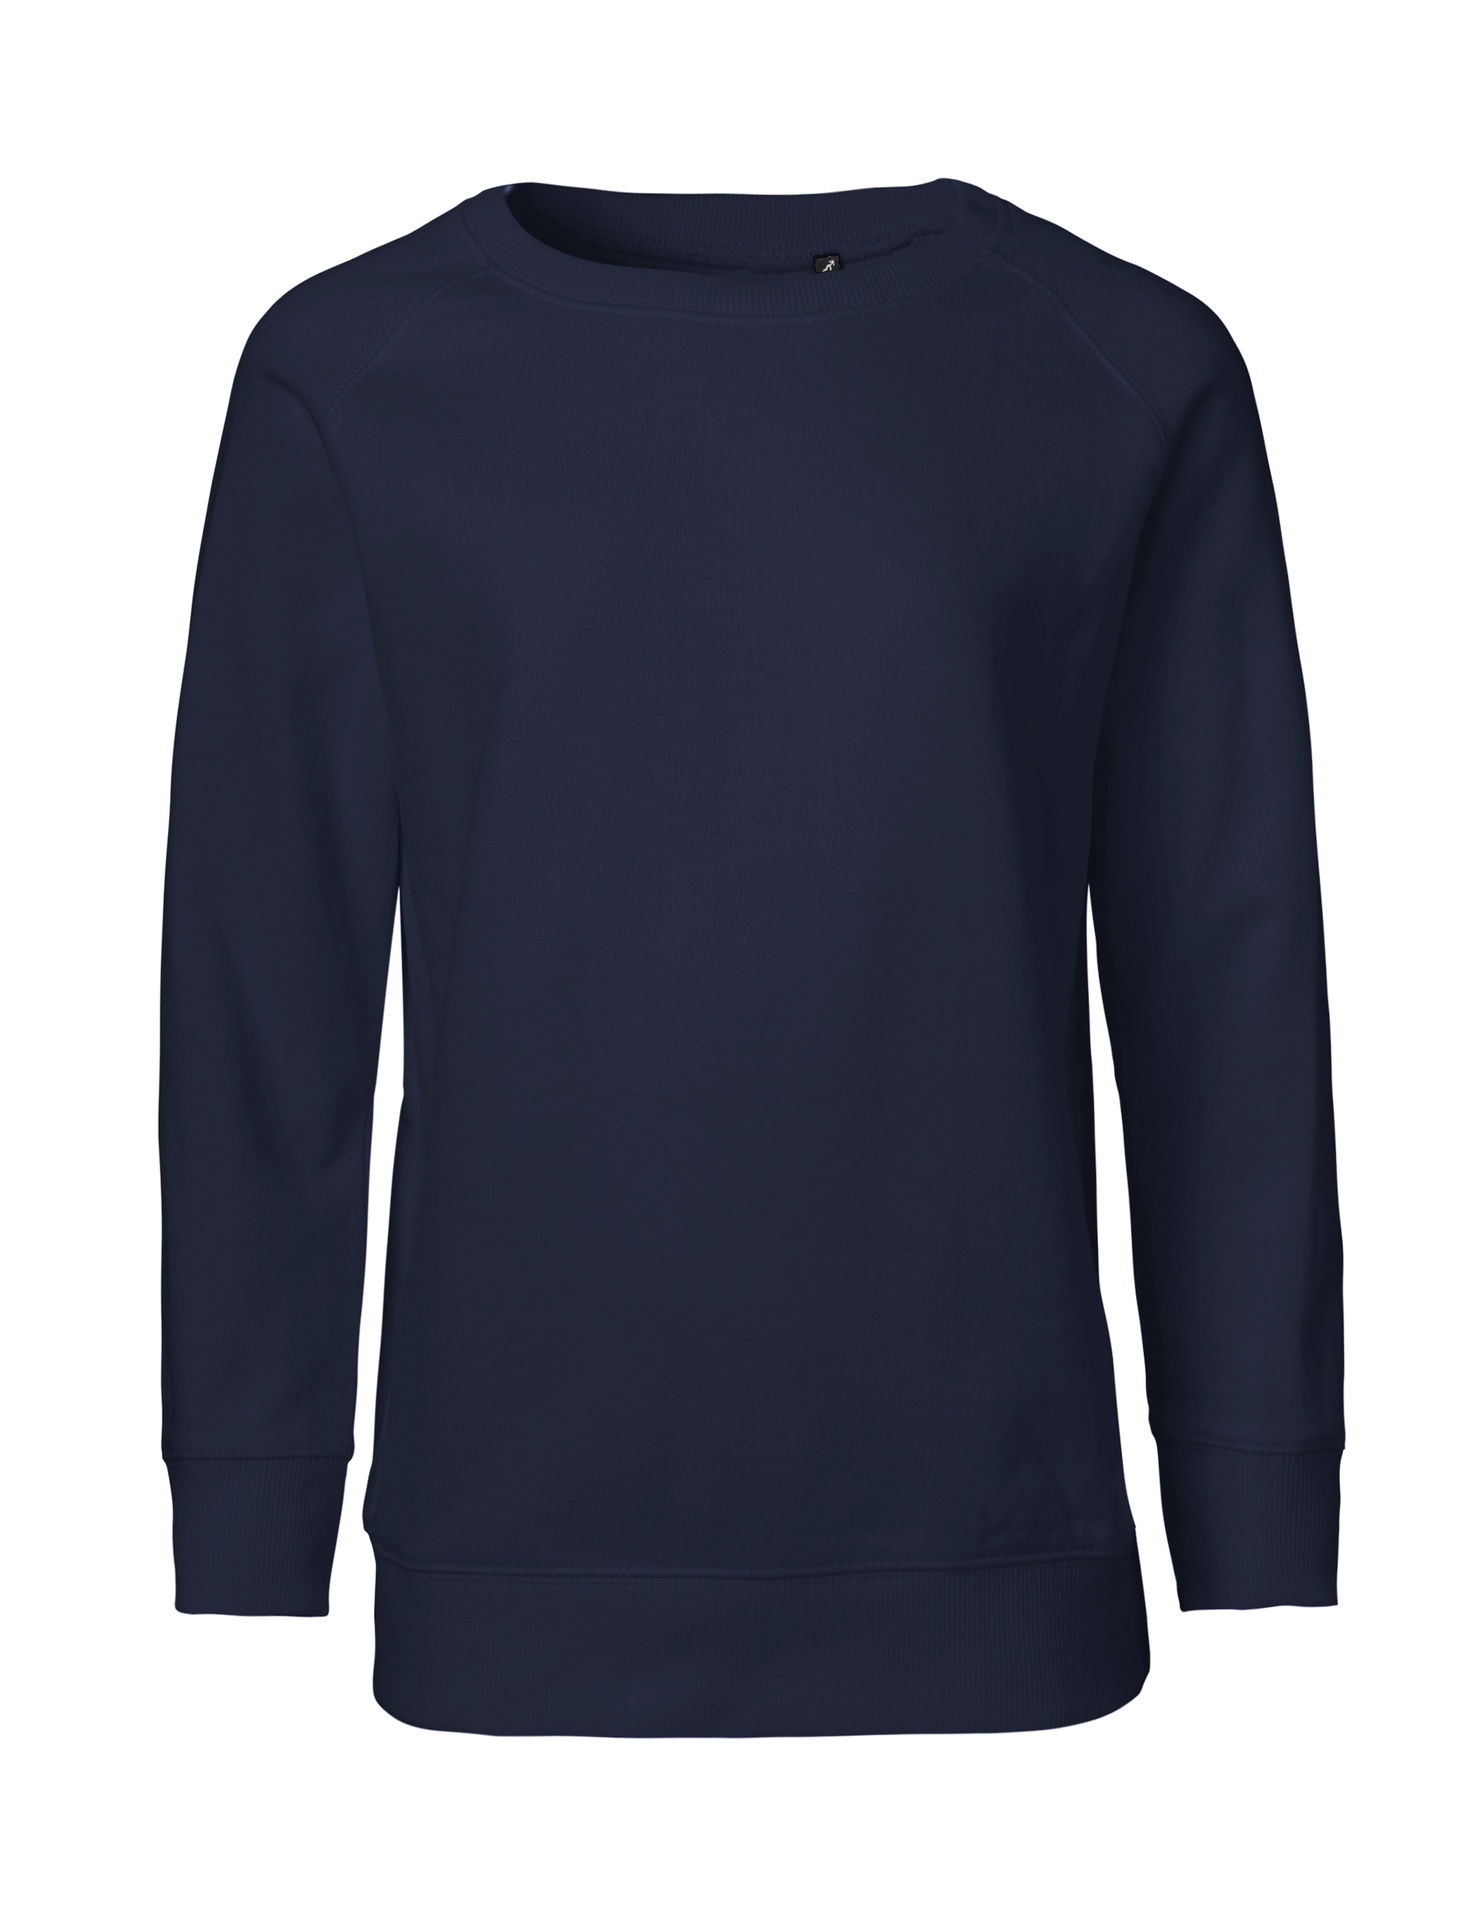 [PR/05530] Kids Sweatshirt (Navy 04, 116/122 cm)